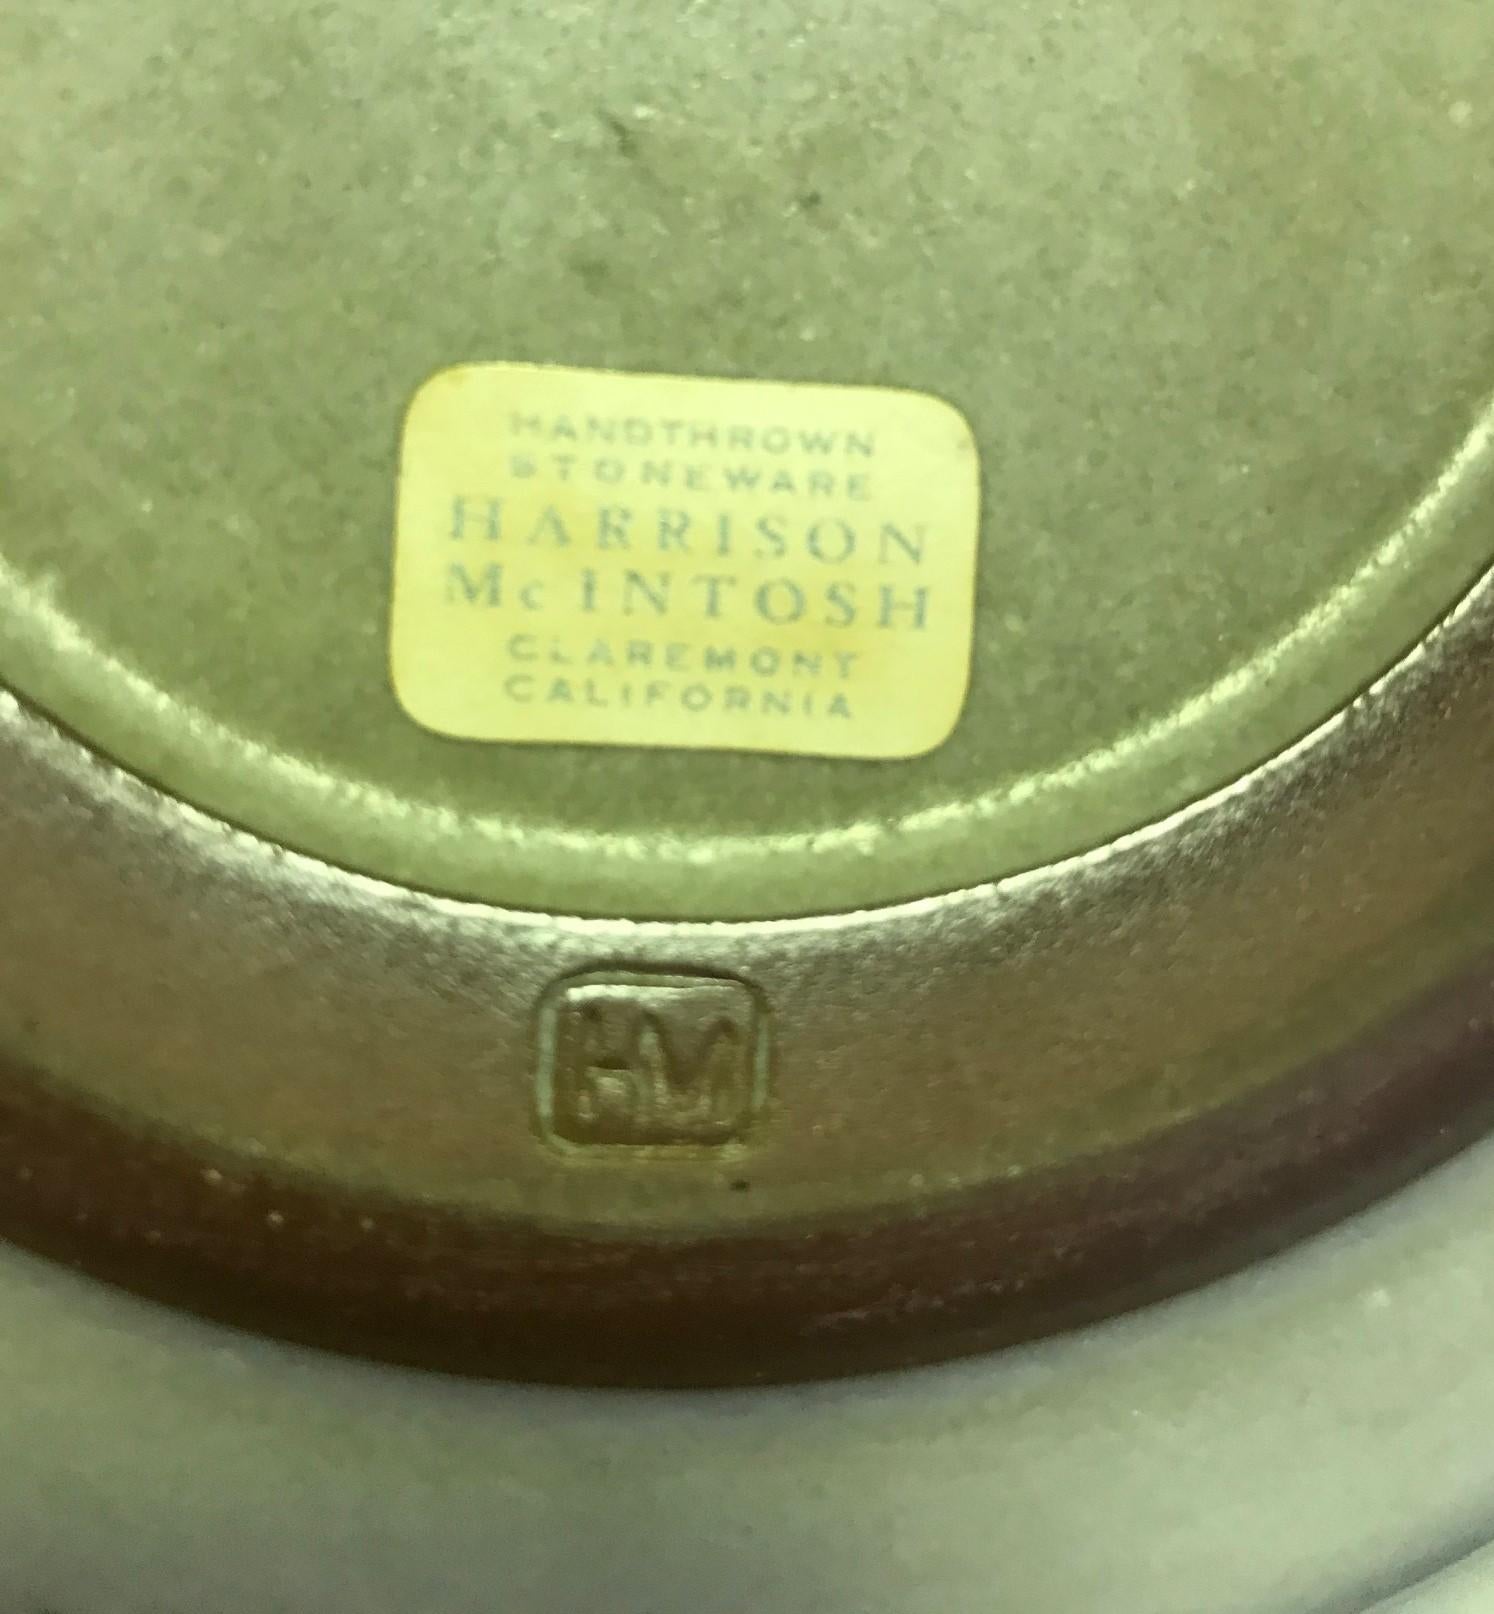 20th Century Harrison Mcintosh Signed Midcentury Ceramic Bowl with Original Studio Label